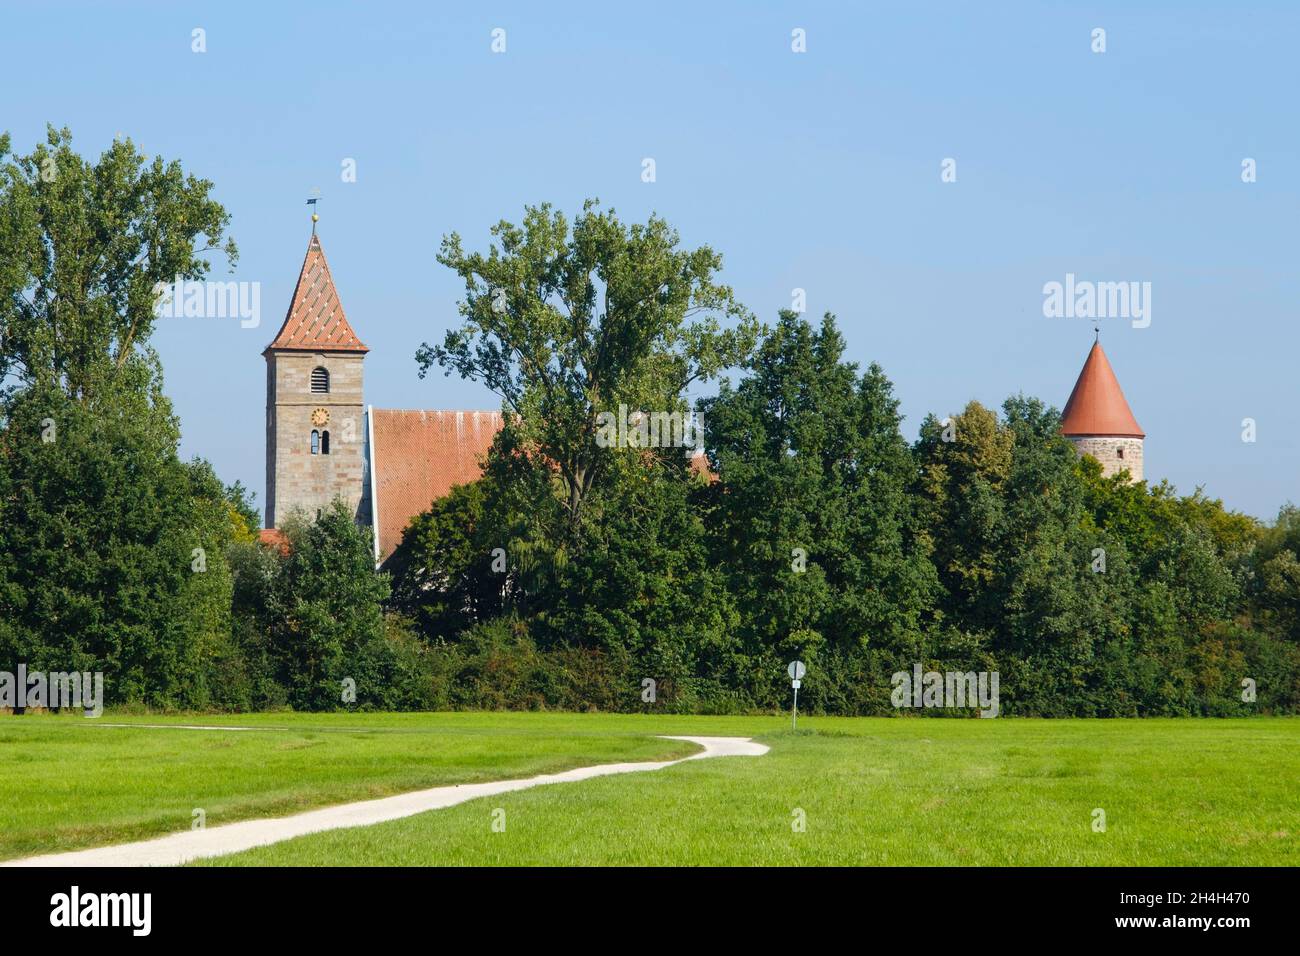 Chiesa parrocchiale e torre del ladro, Ornbau, Altmuehltal, Distretto del Lago Franconiano, Franconia, Baviera, Germania Foto Stock